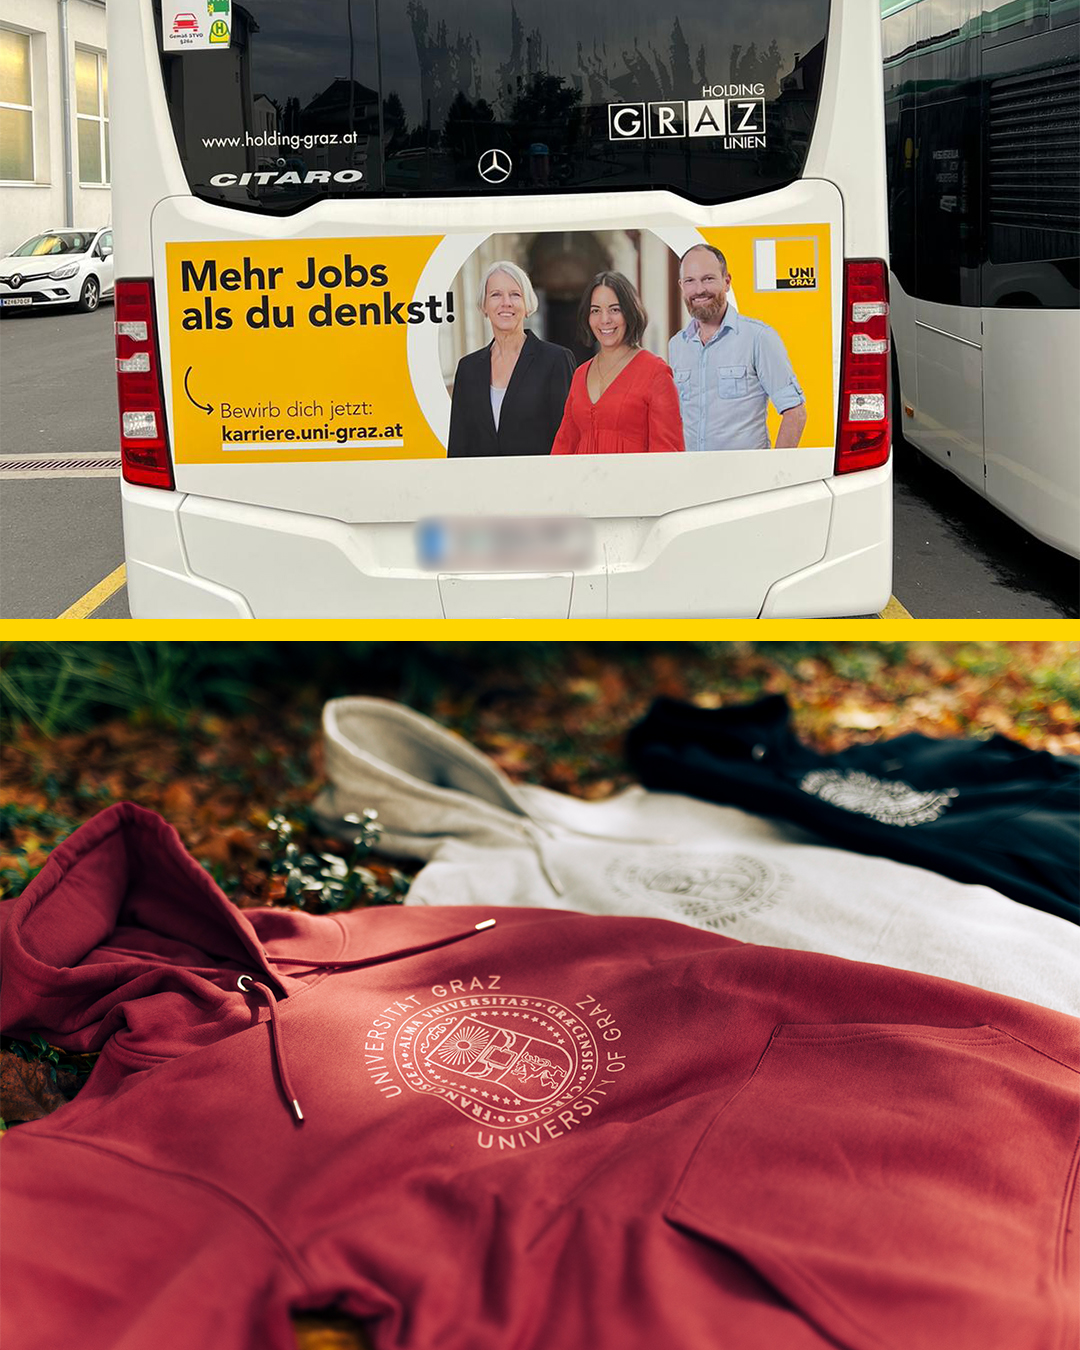 Fotomontage aus zwei Bildern. Oben ein Bus der Stadt Graz mit einer Plakatwerbung der Uni Graz, unten drei Pullover der Uni graz in rot, weiß und schwarz ©Uni Graz/Angele